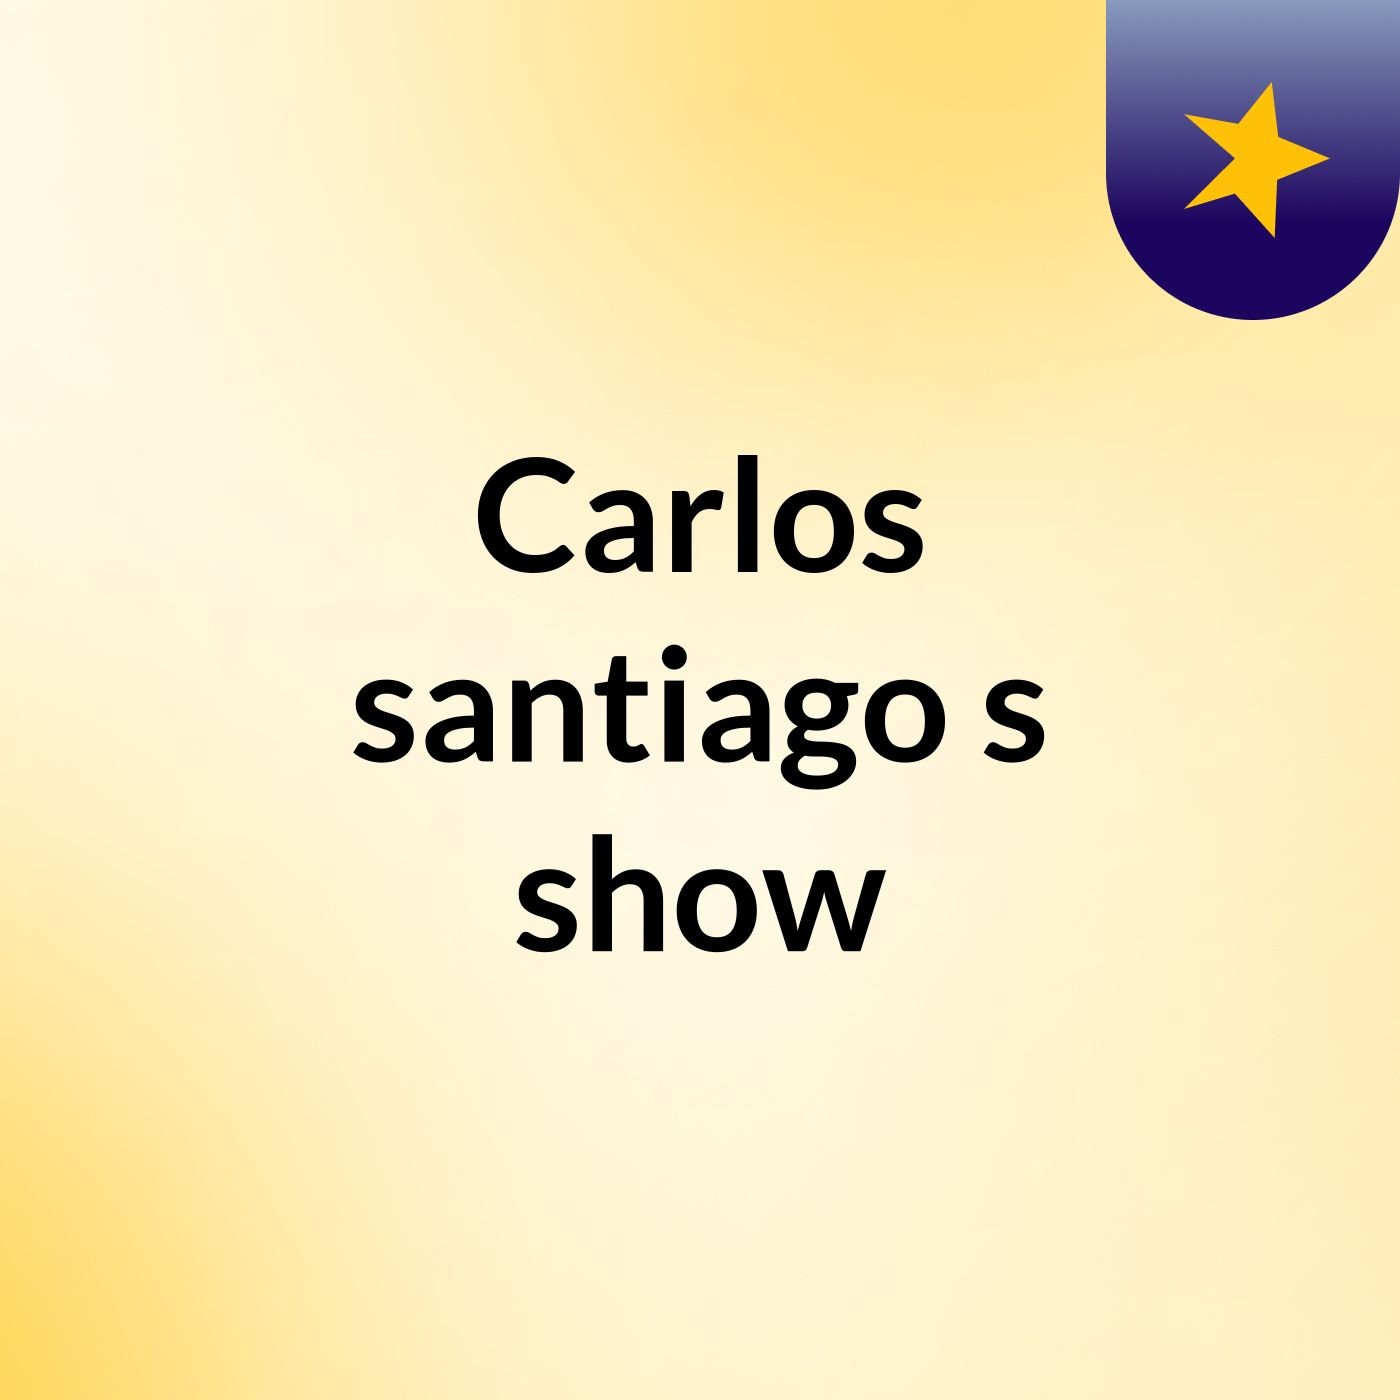 Carlos santiago's show